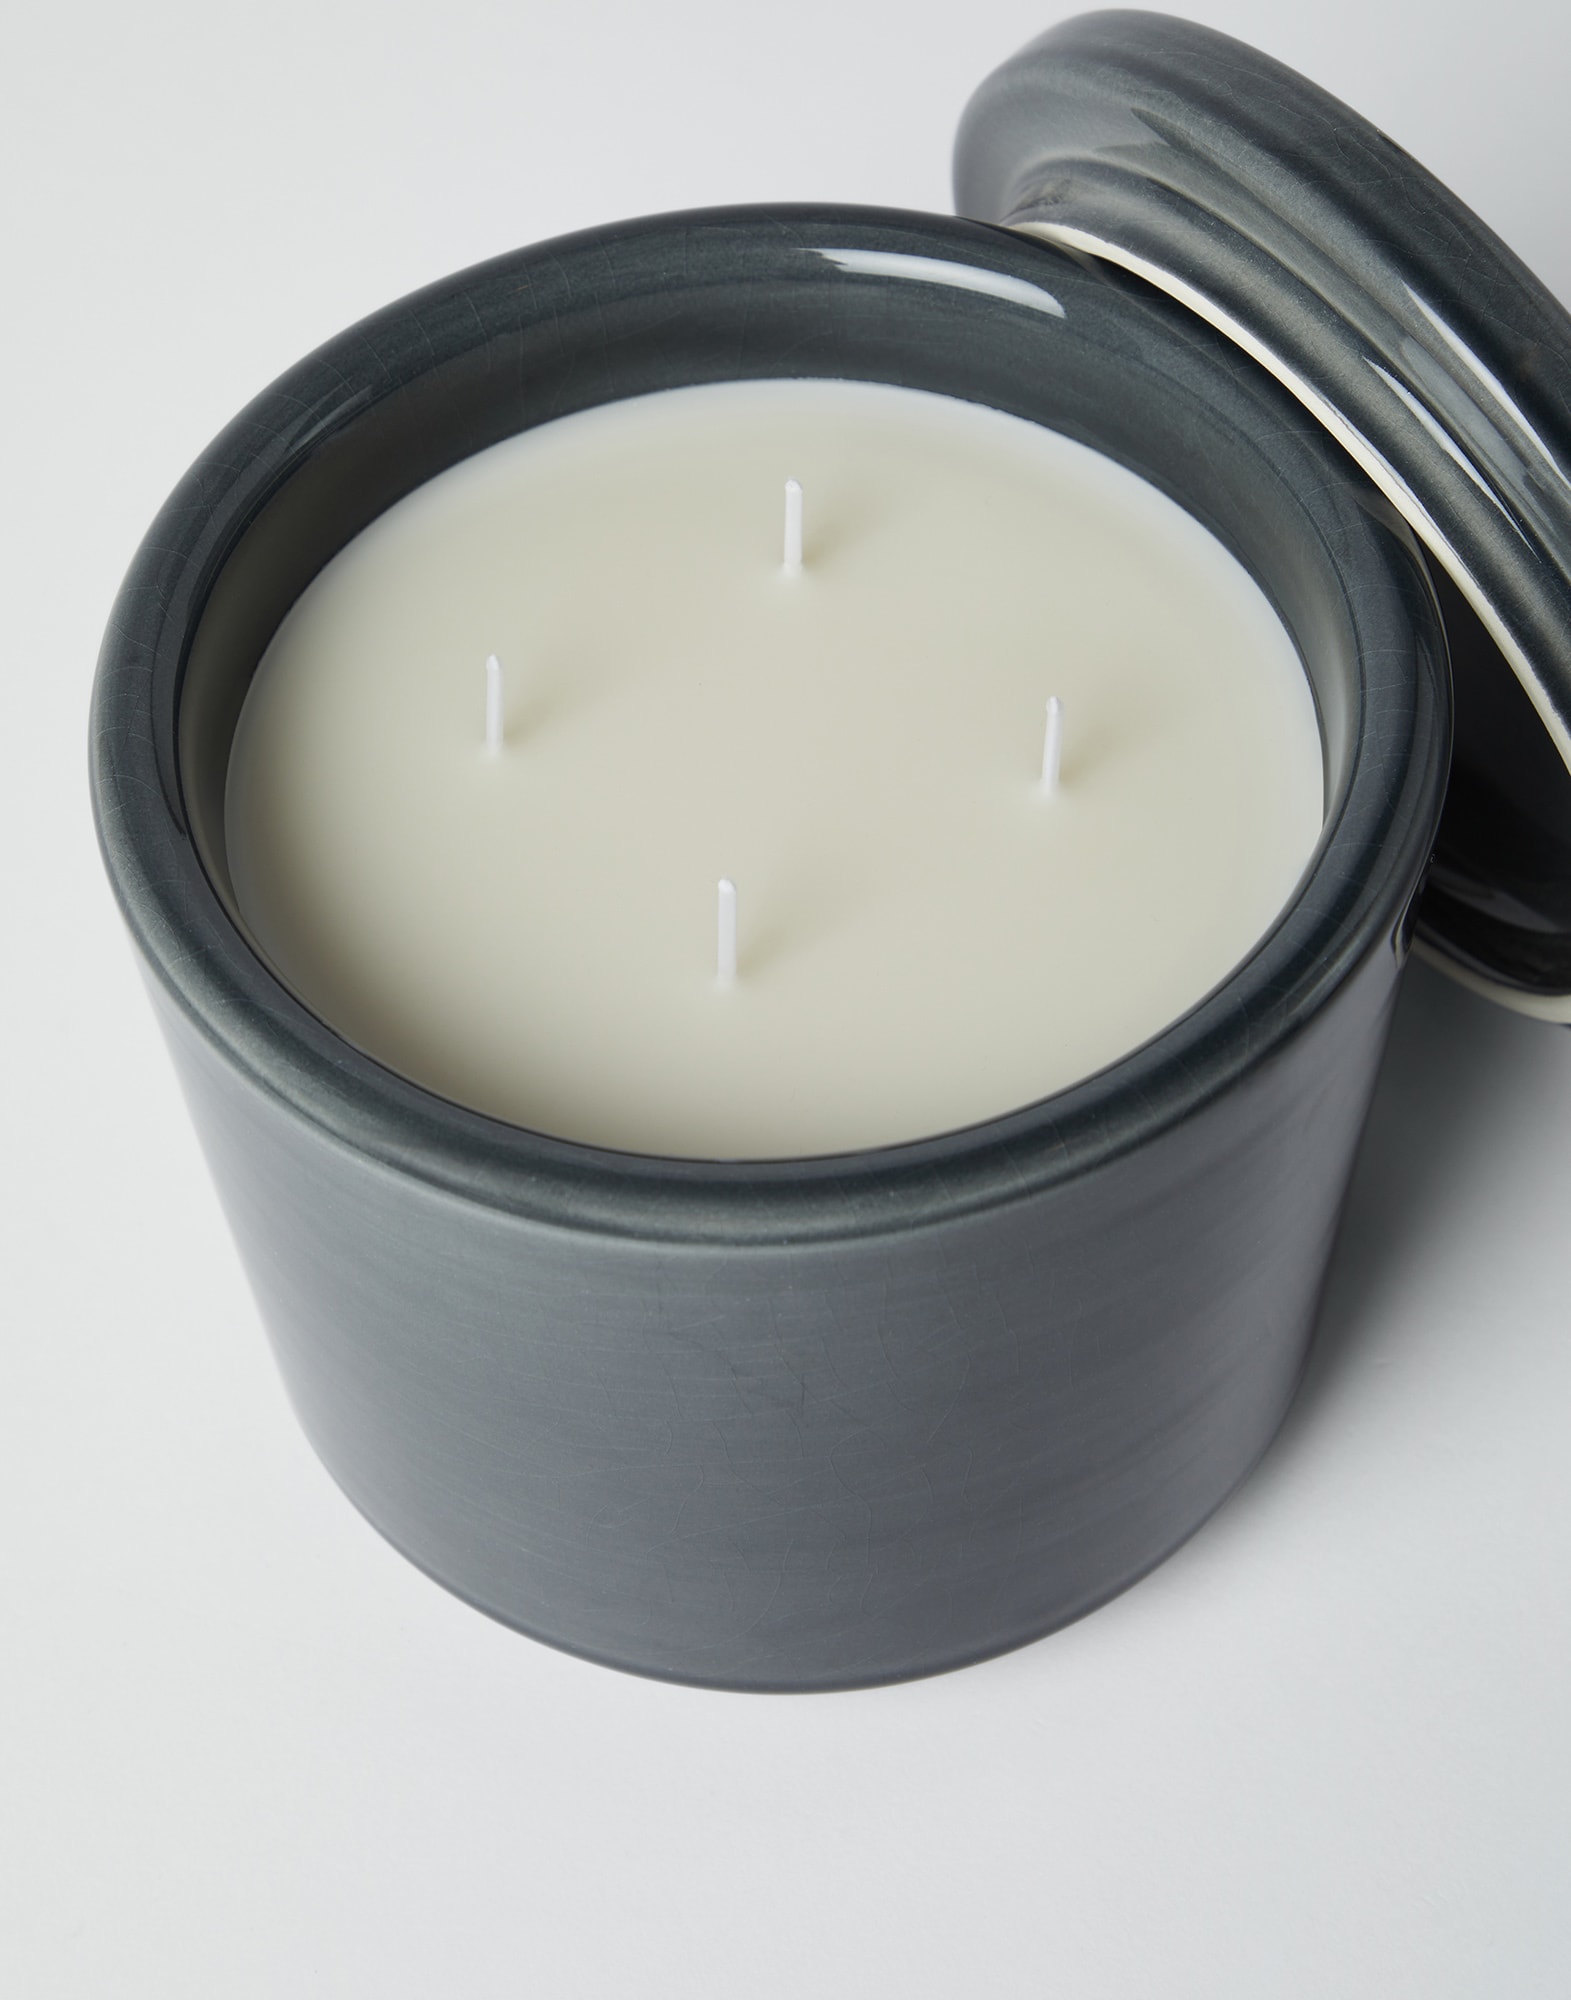 Maxi candela profumata con coperchio (241MLCAND440CPRUK01) Lifestyle